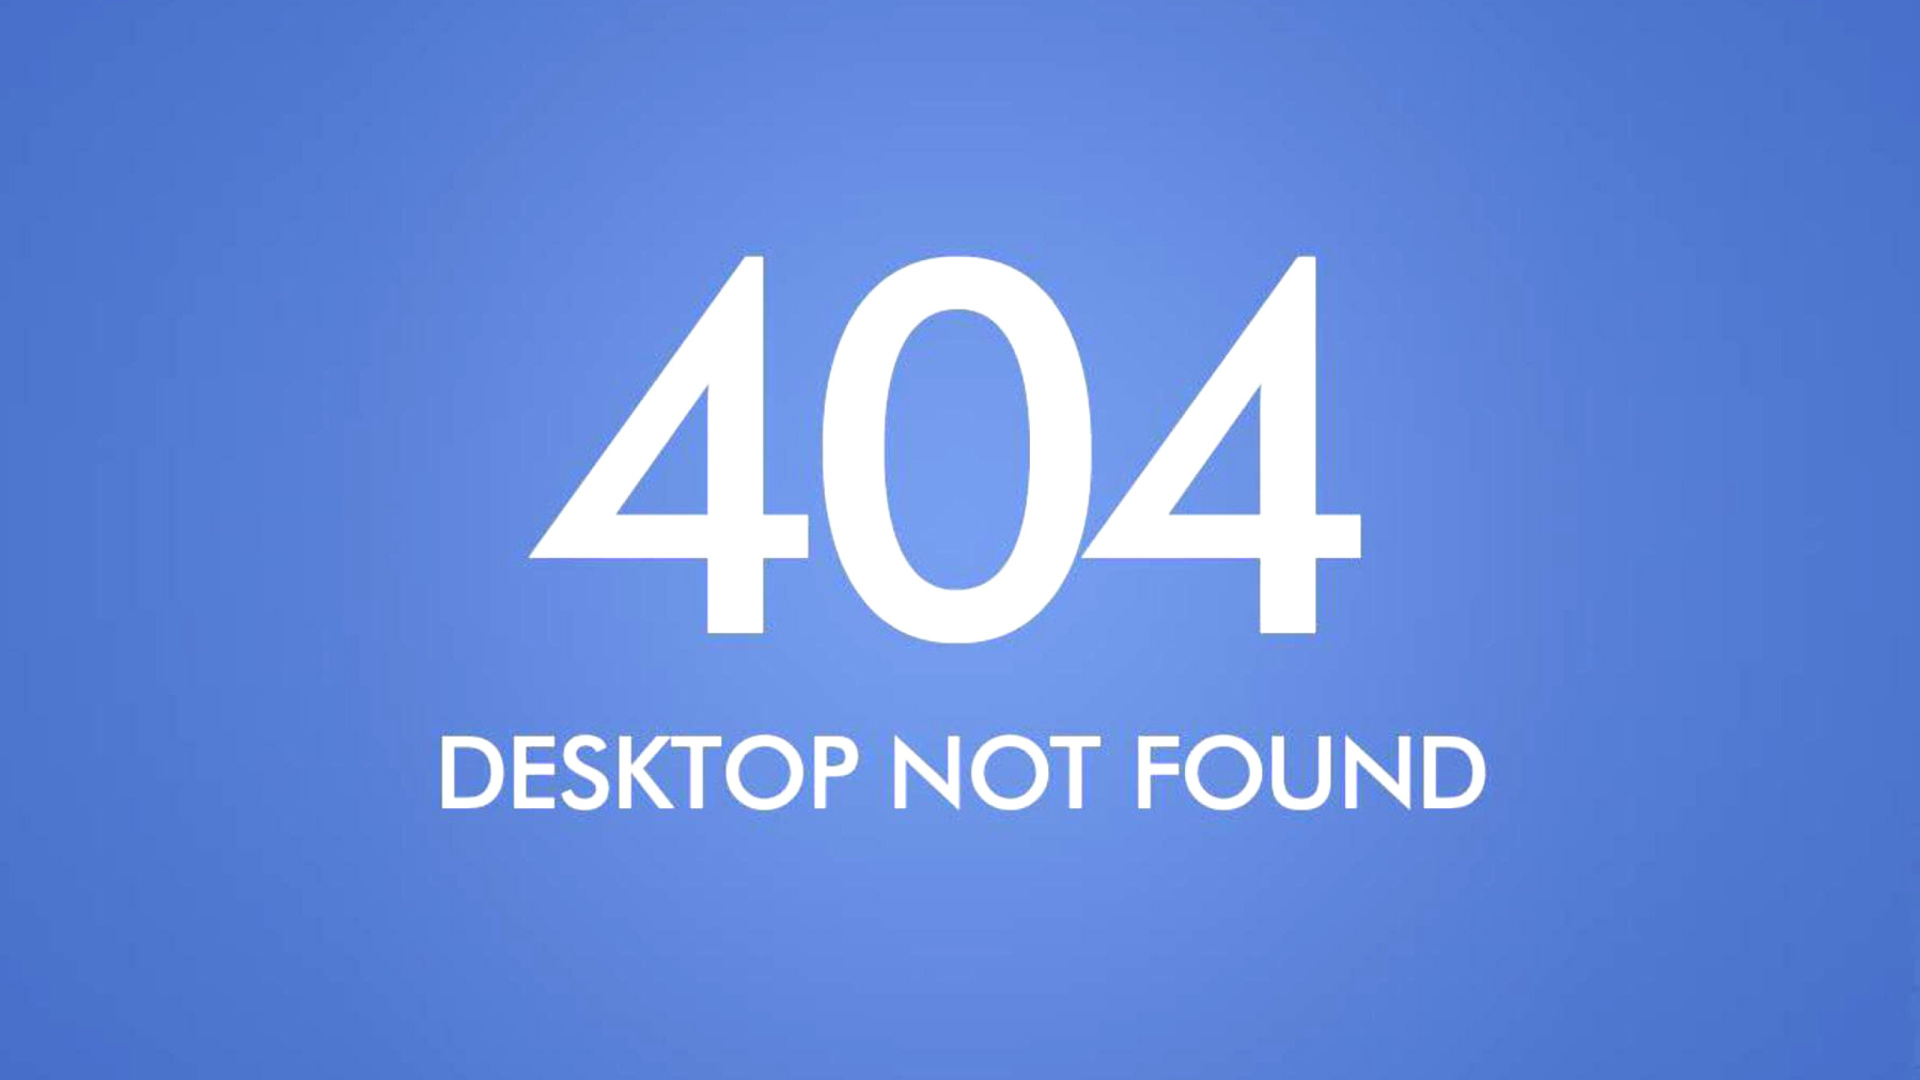 Das 404 Desktop Not Found Wallpaper 1920x1080